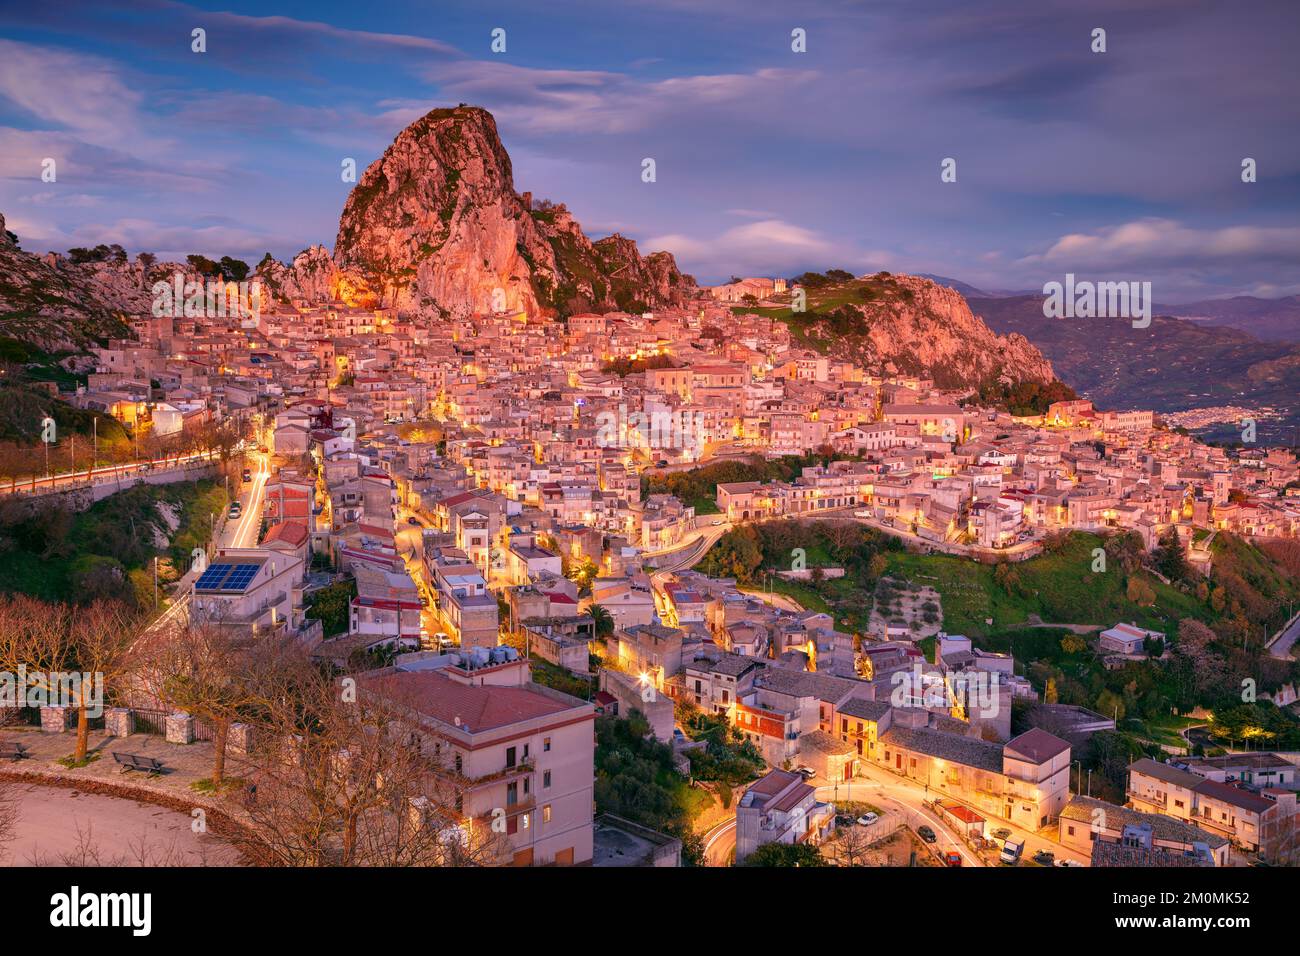 Caltabellotta, Sicilia, Italia. Immagine di paesaggio urbano se Caltabellotta città storica in Sicilia al tramonto drammatico. Foto Stock